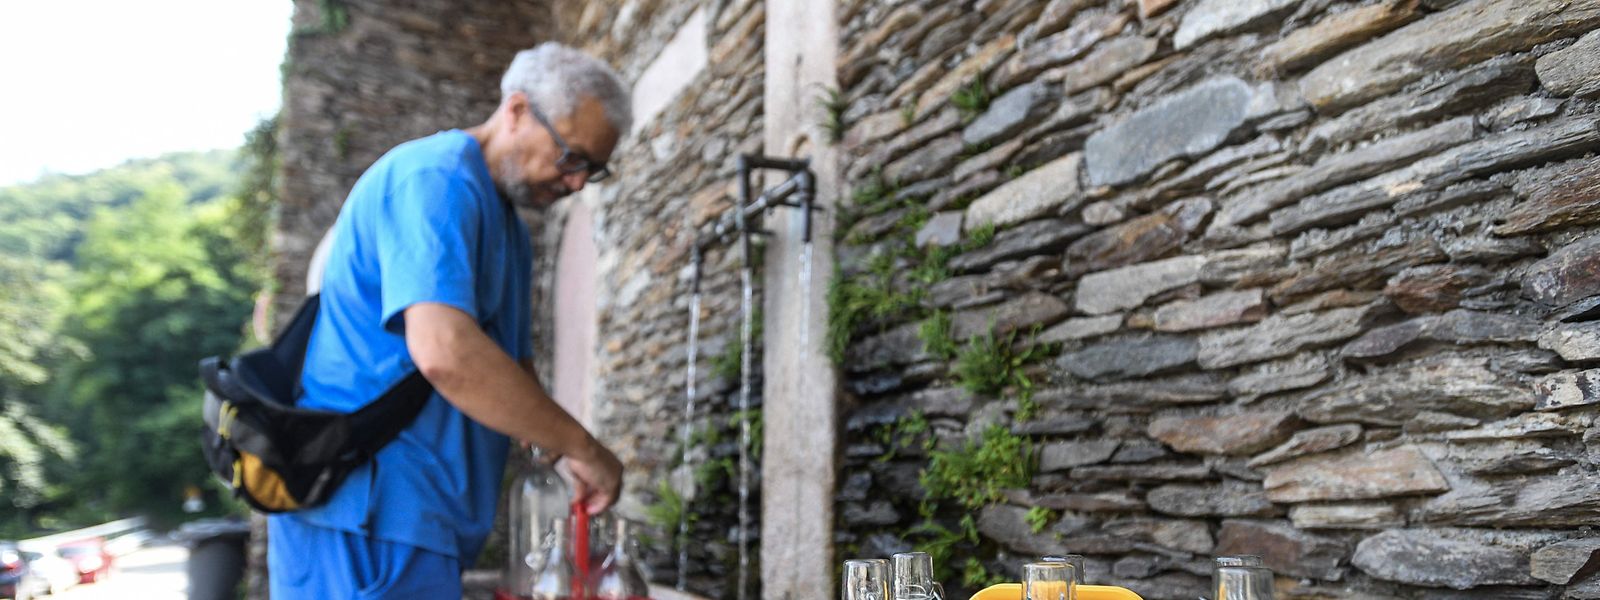 125 Kommunen in den Regionen Piemont und Lombardei wurden angesichts der schlimmsten Dürre, die Norditalien seit 70 Jahren heimgesucht hat, aufgefordert, Wasser zu rationieren. 